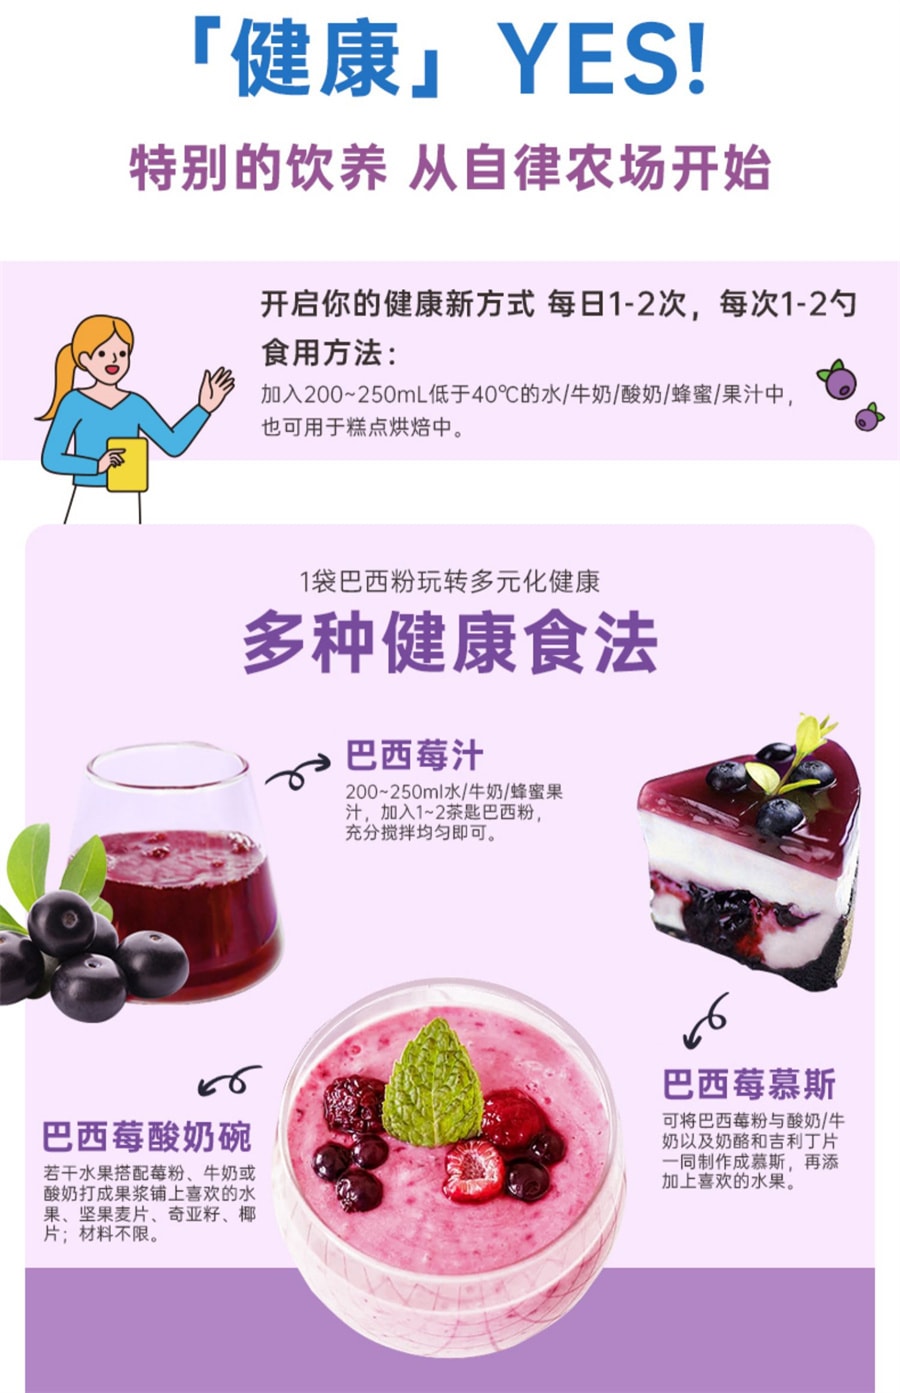 【中國直效郵件】自律農場 巴西莓粉蔬果纖維粉超級食物抗自由基氧化無蔗糖袋裝沖飲粉 120g/袋